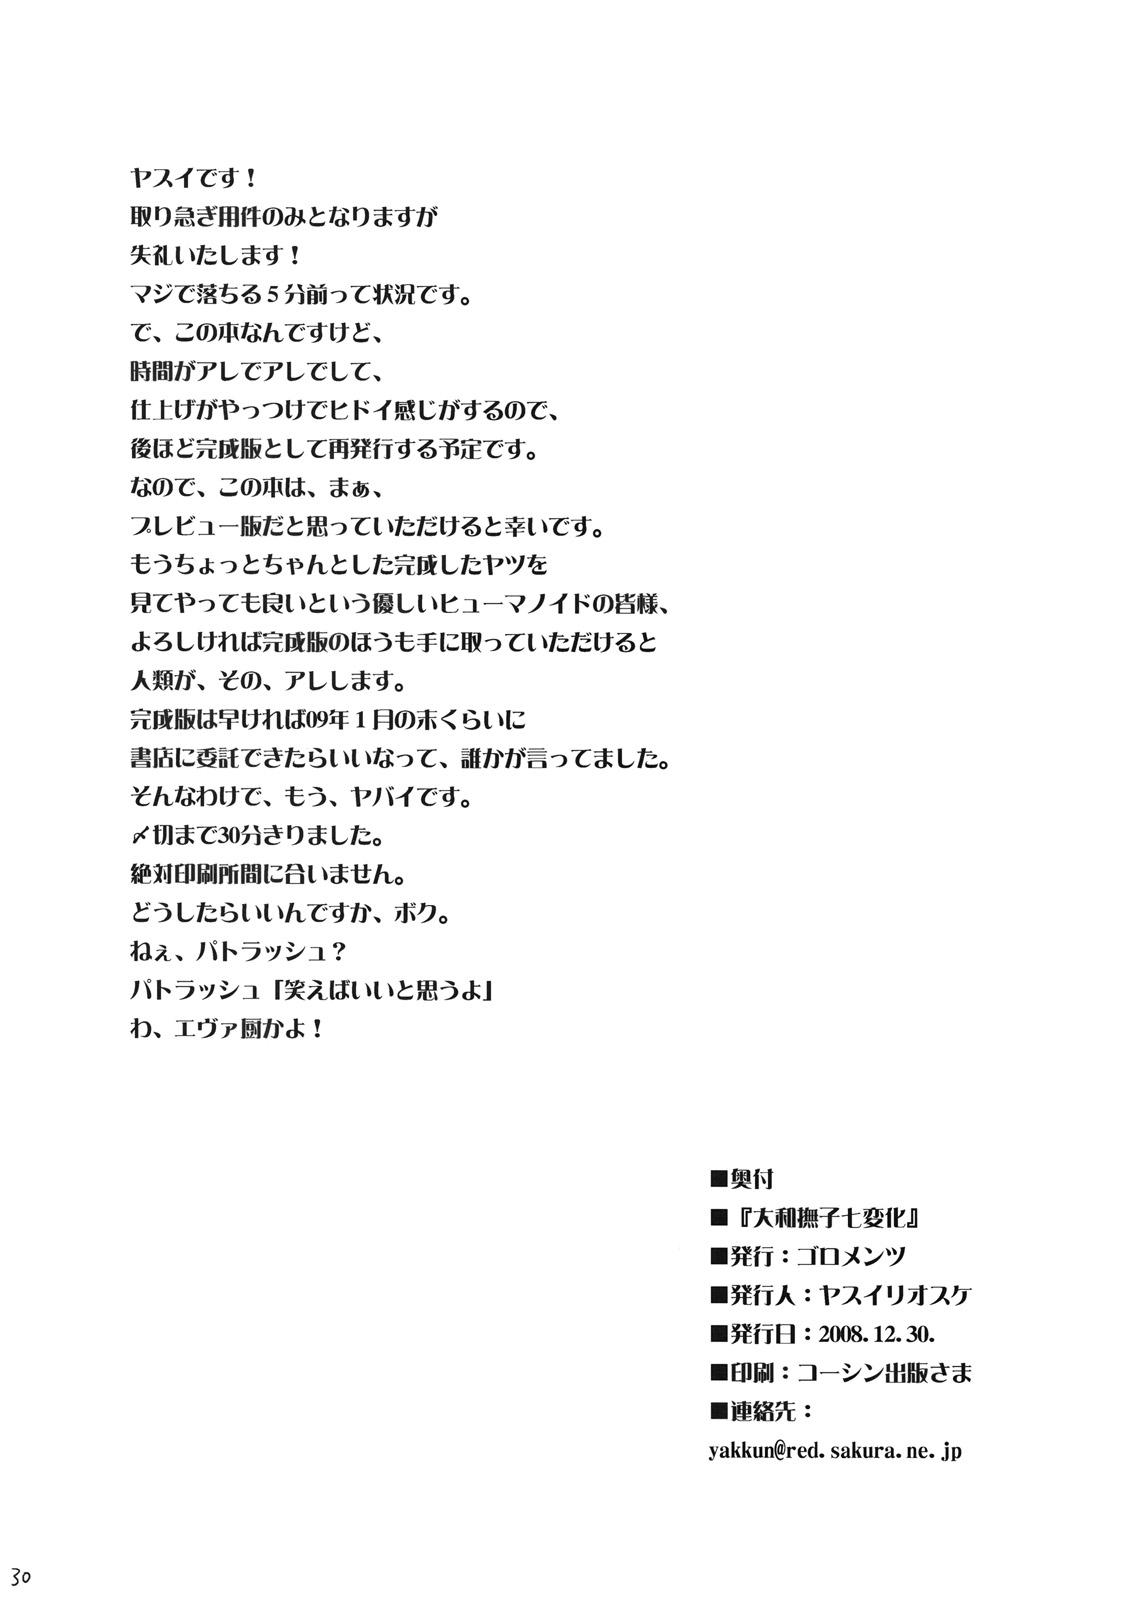 Gaping Yamato Nadeshiko Shichihenge - Code geass Storyline - Page 30